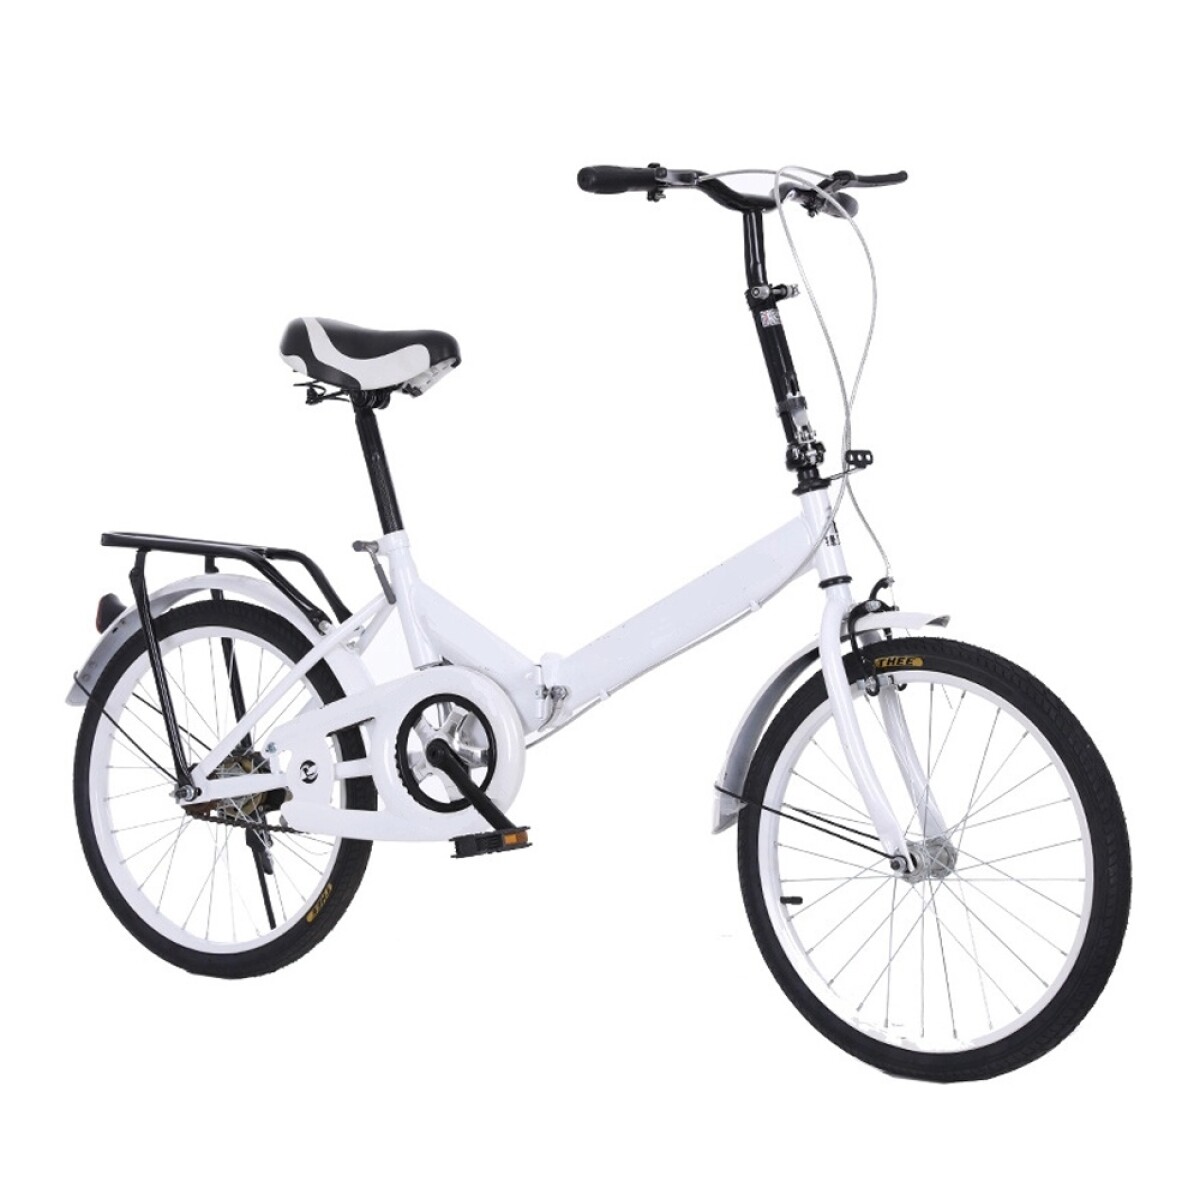 Bicicleta Plegable Rodado 20 Adultos Parrilla Frenos Timbre - Blanco 